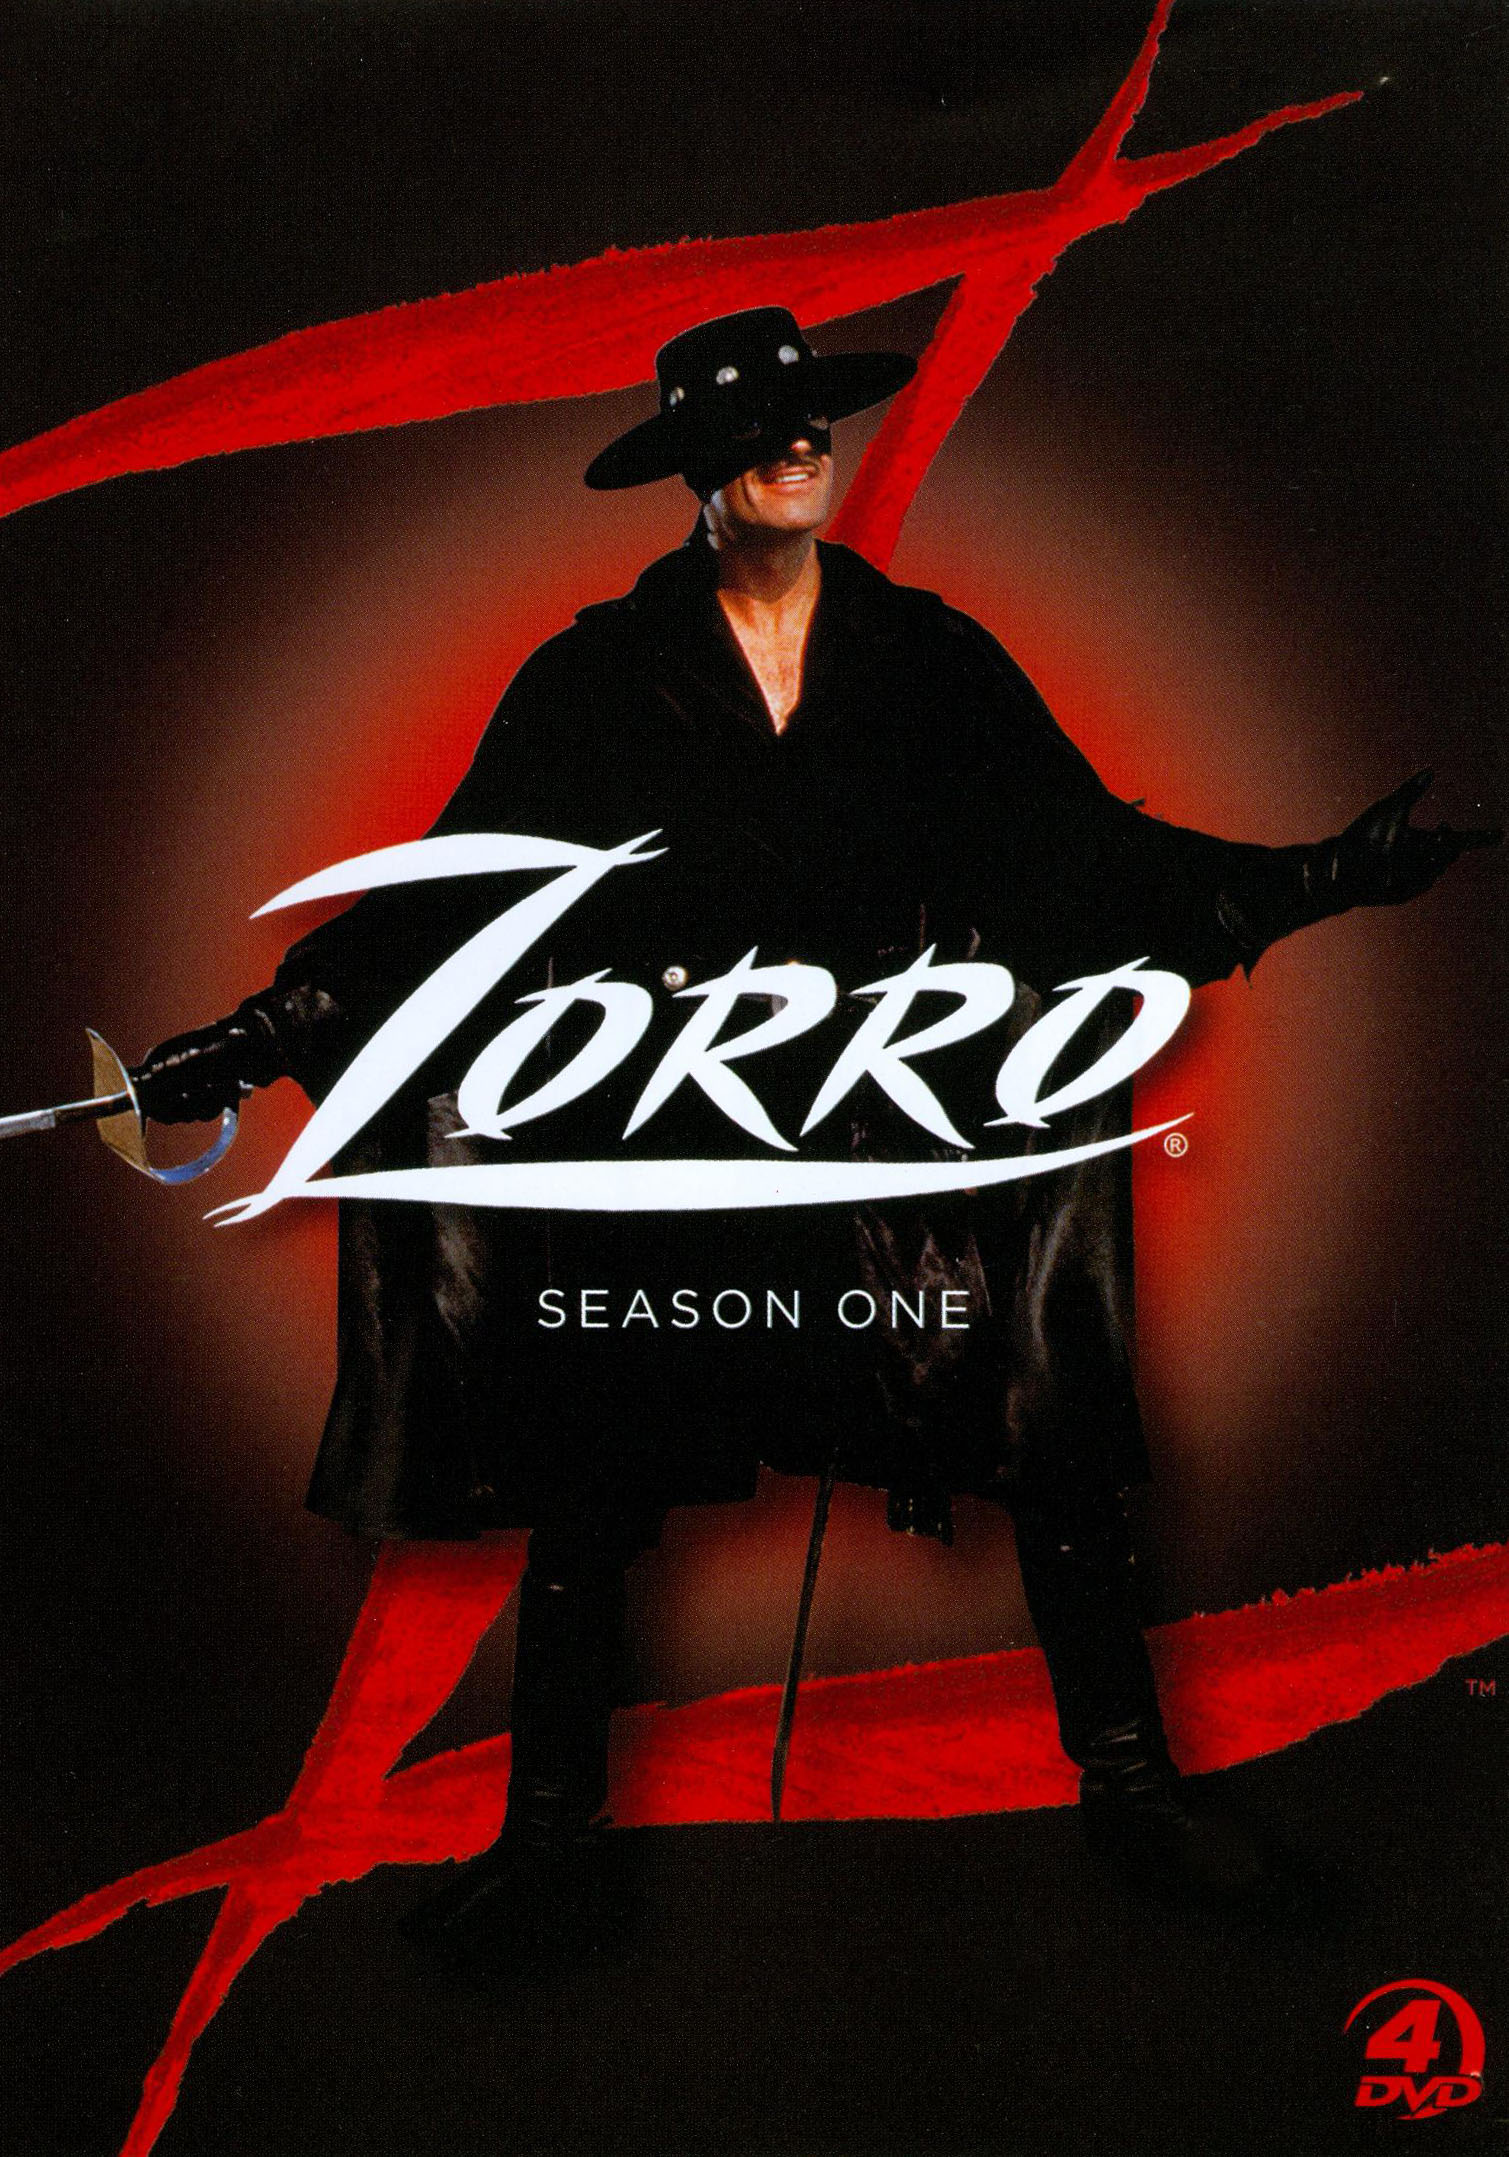 Zorro 1°temp - Box - 5 Dvds Edição Para Colecionador